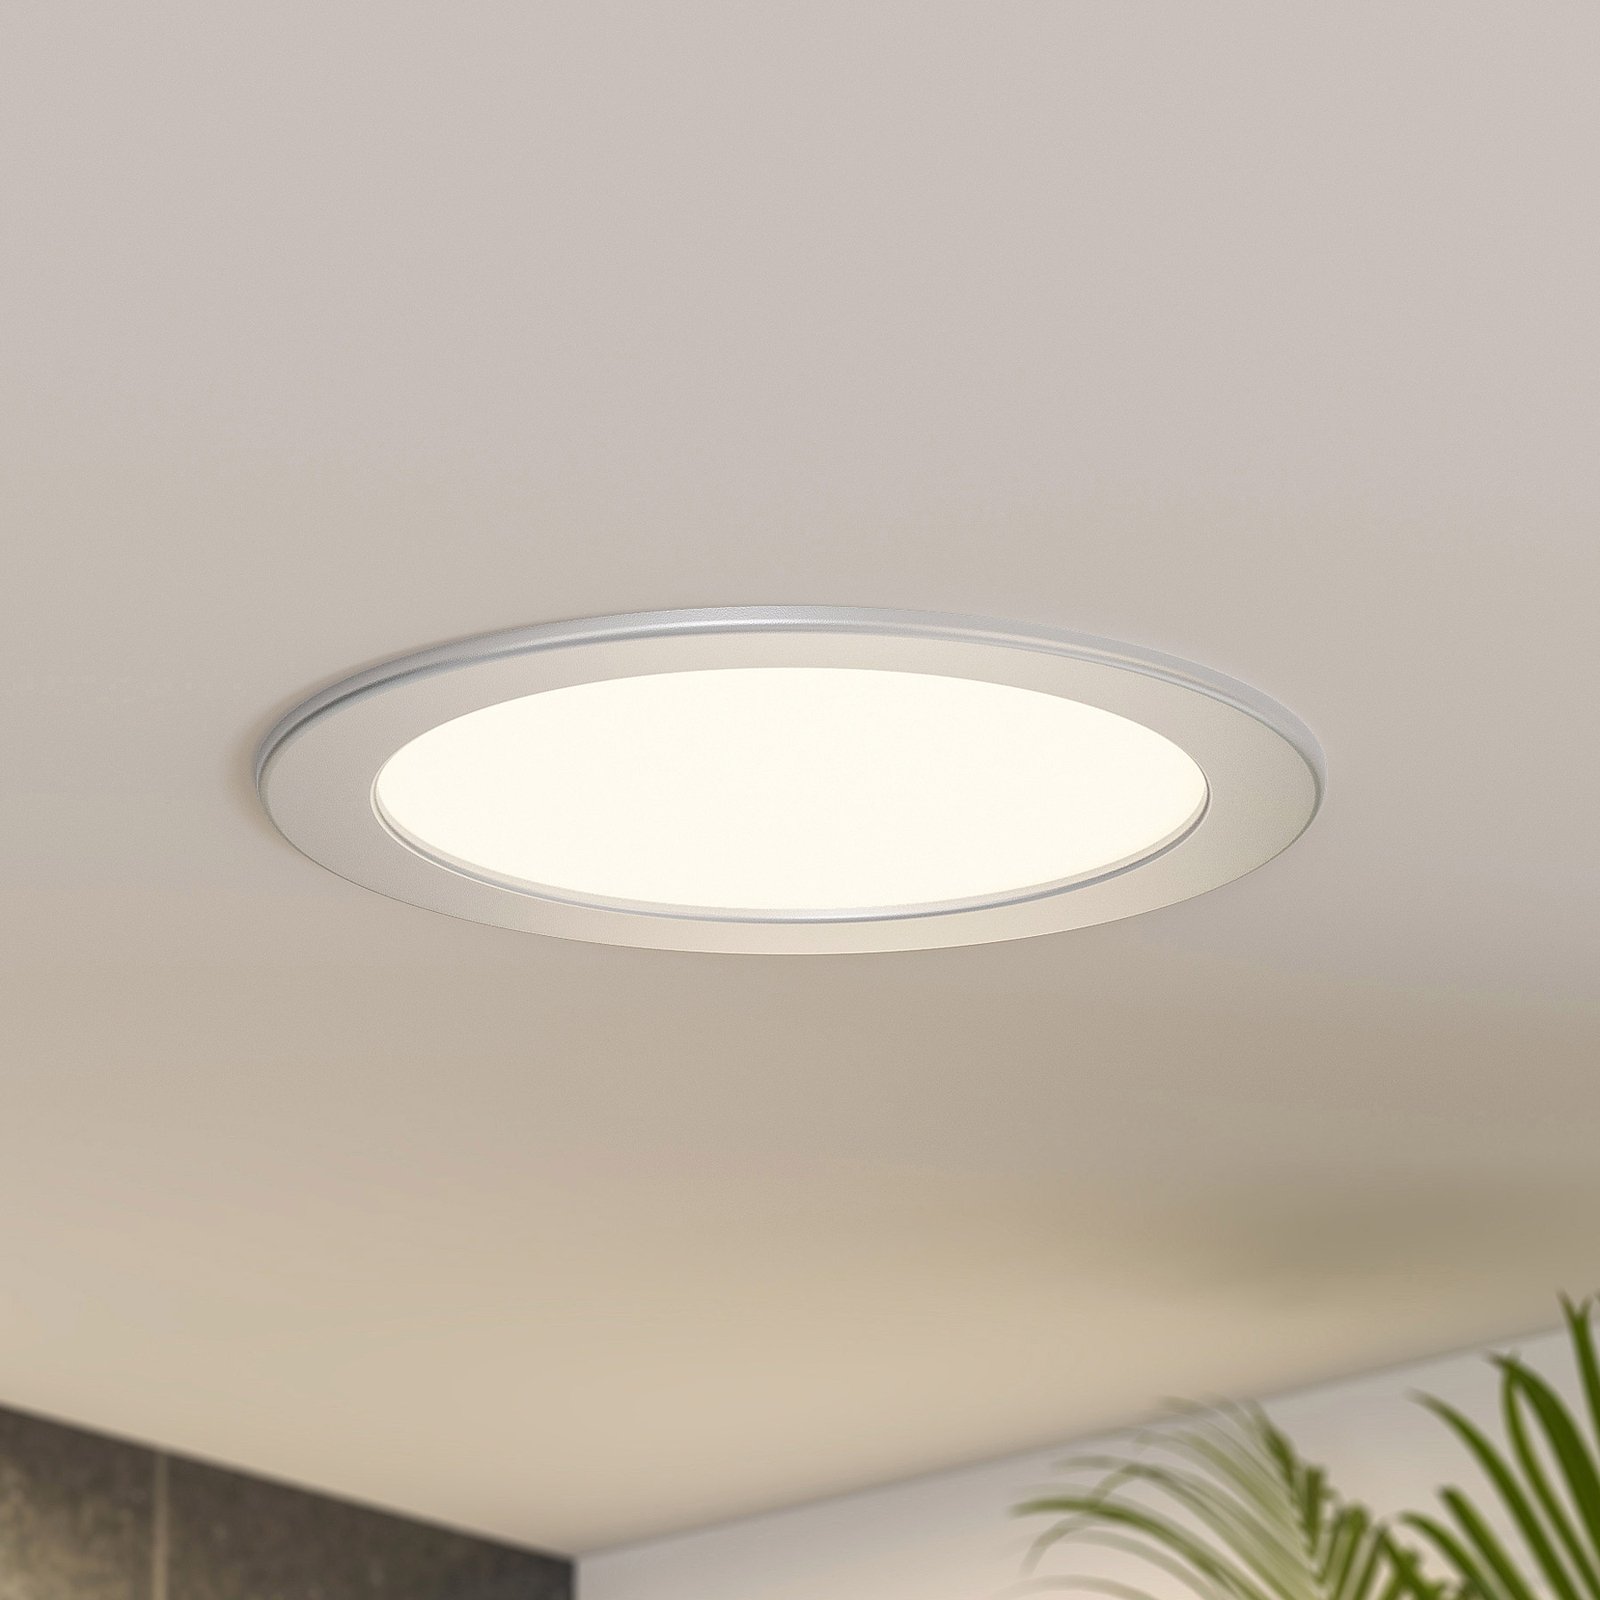 Prios Cadance spot LED incasso, argento, 22 cm